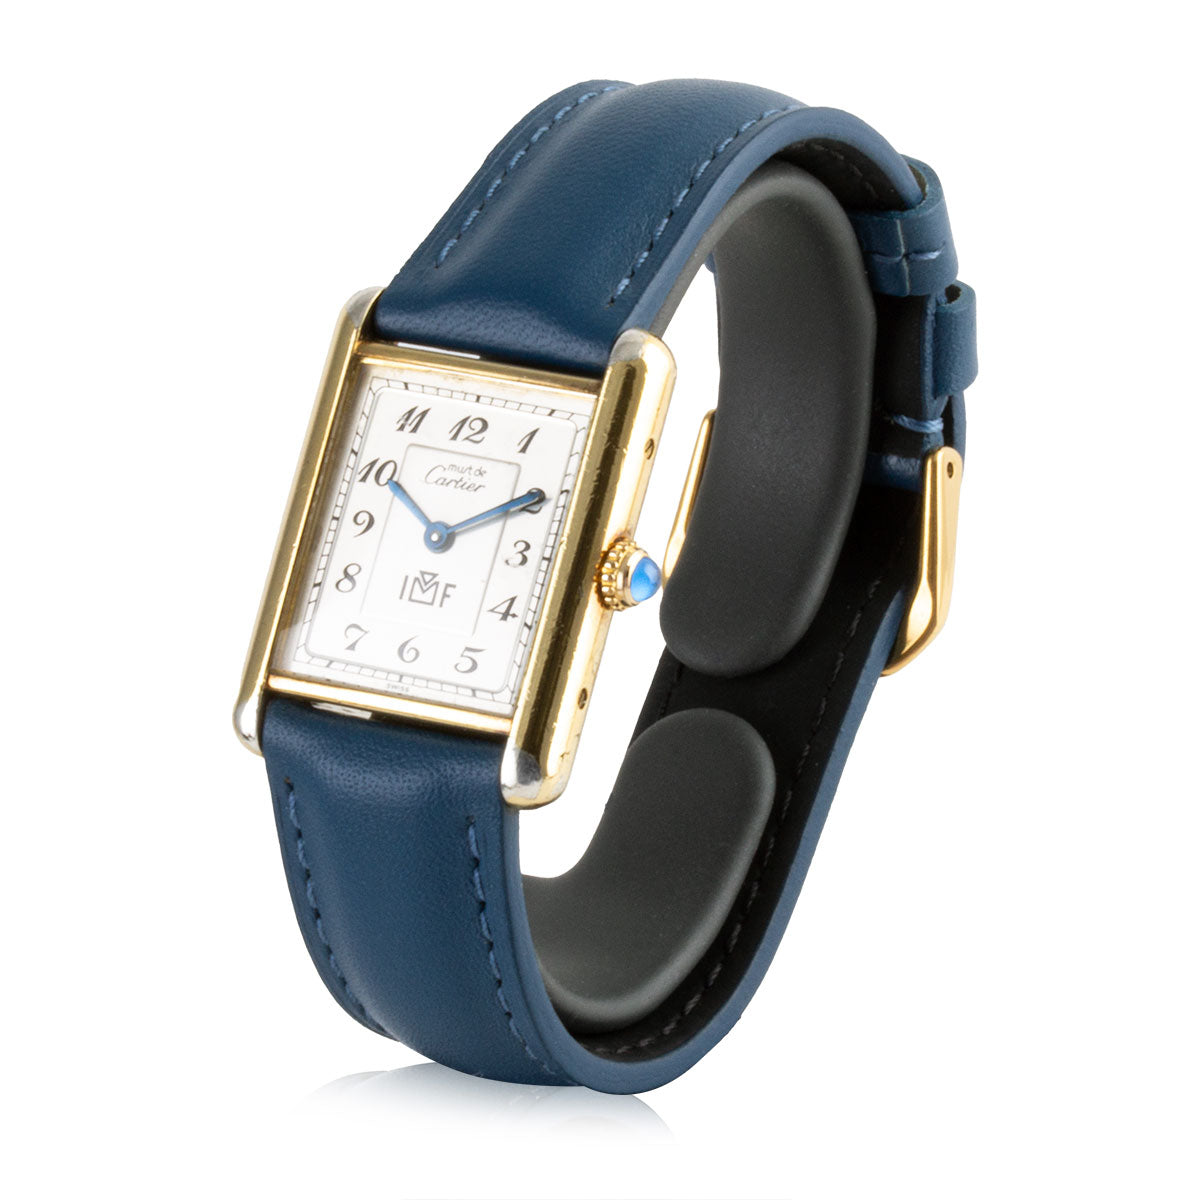 Second-hand watch - Cartier - Tank Must - 2200€